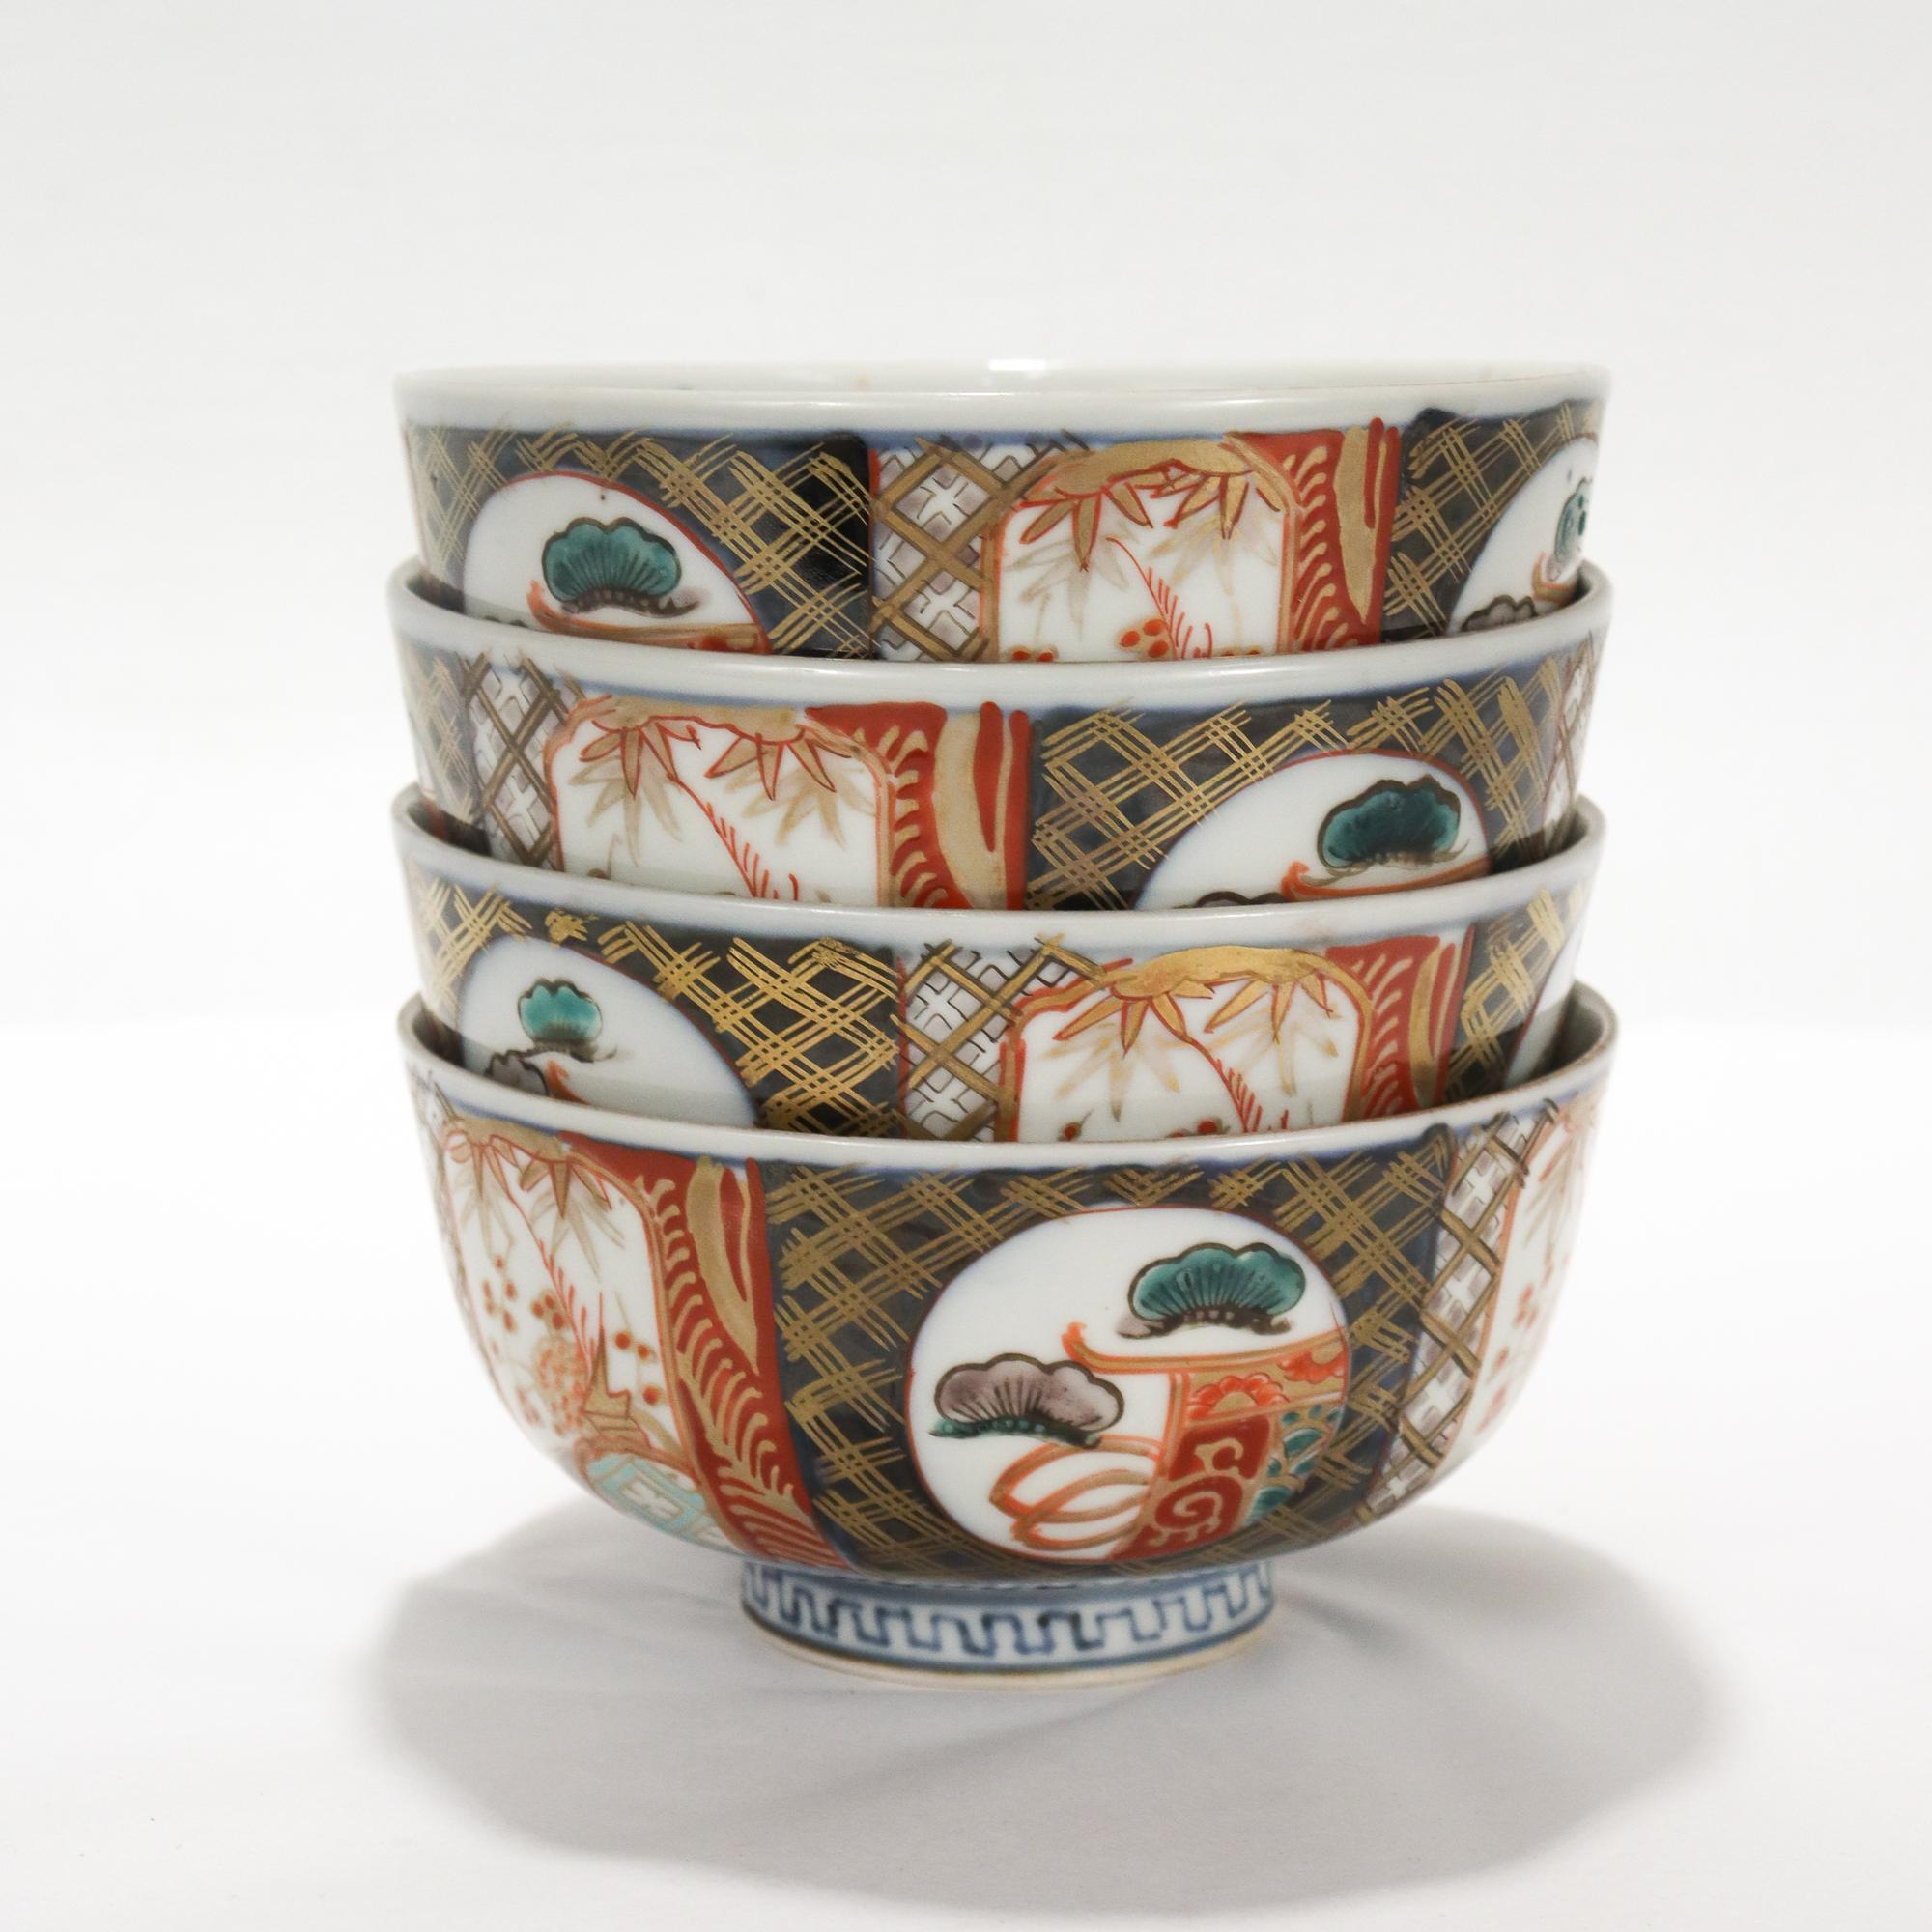 Un bel ensemble de 4 bols en porcelaine japonaise Imari

Chacune d'entre elles est décorée de scènes naturelles en bleu, rouge et vert kaikemon et de nombreuses dorures.

Marqué à la base d'une marque de fabricant bleu sous glaçure pour